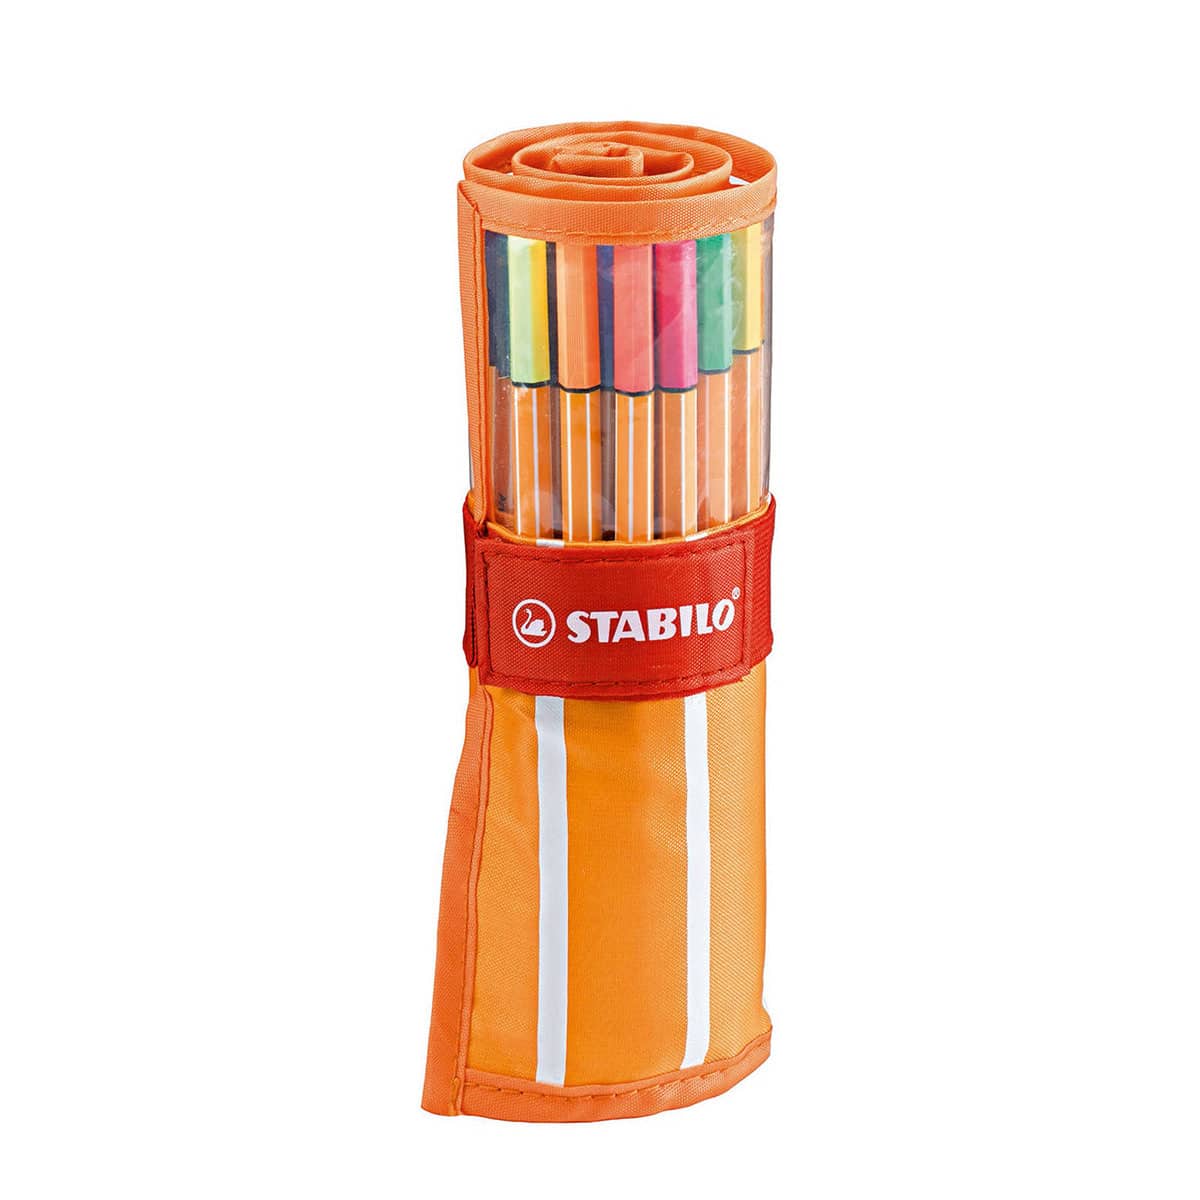 STABILO Fineliner Point 88 Rolltasche mit 30 Farben - Suitup - Art Supplies